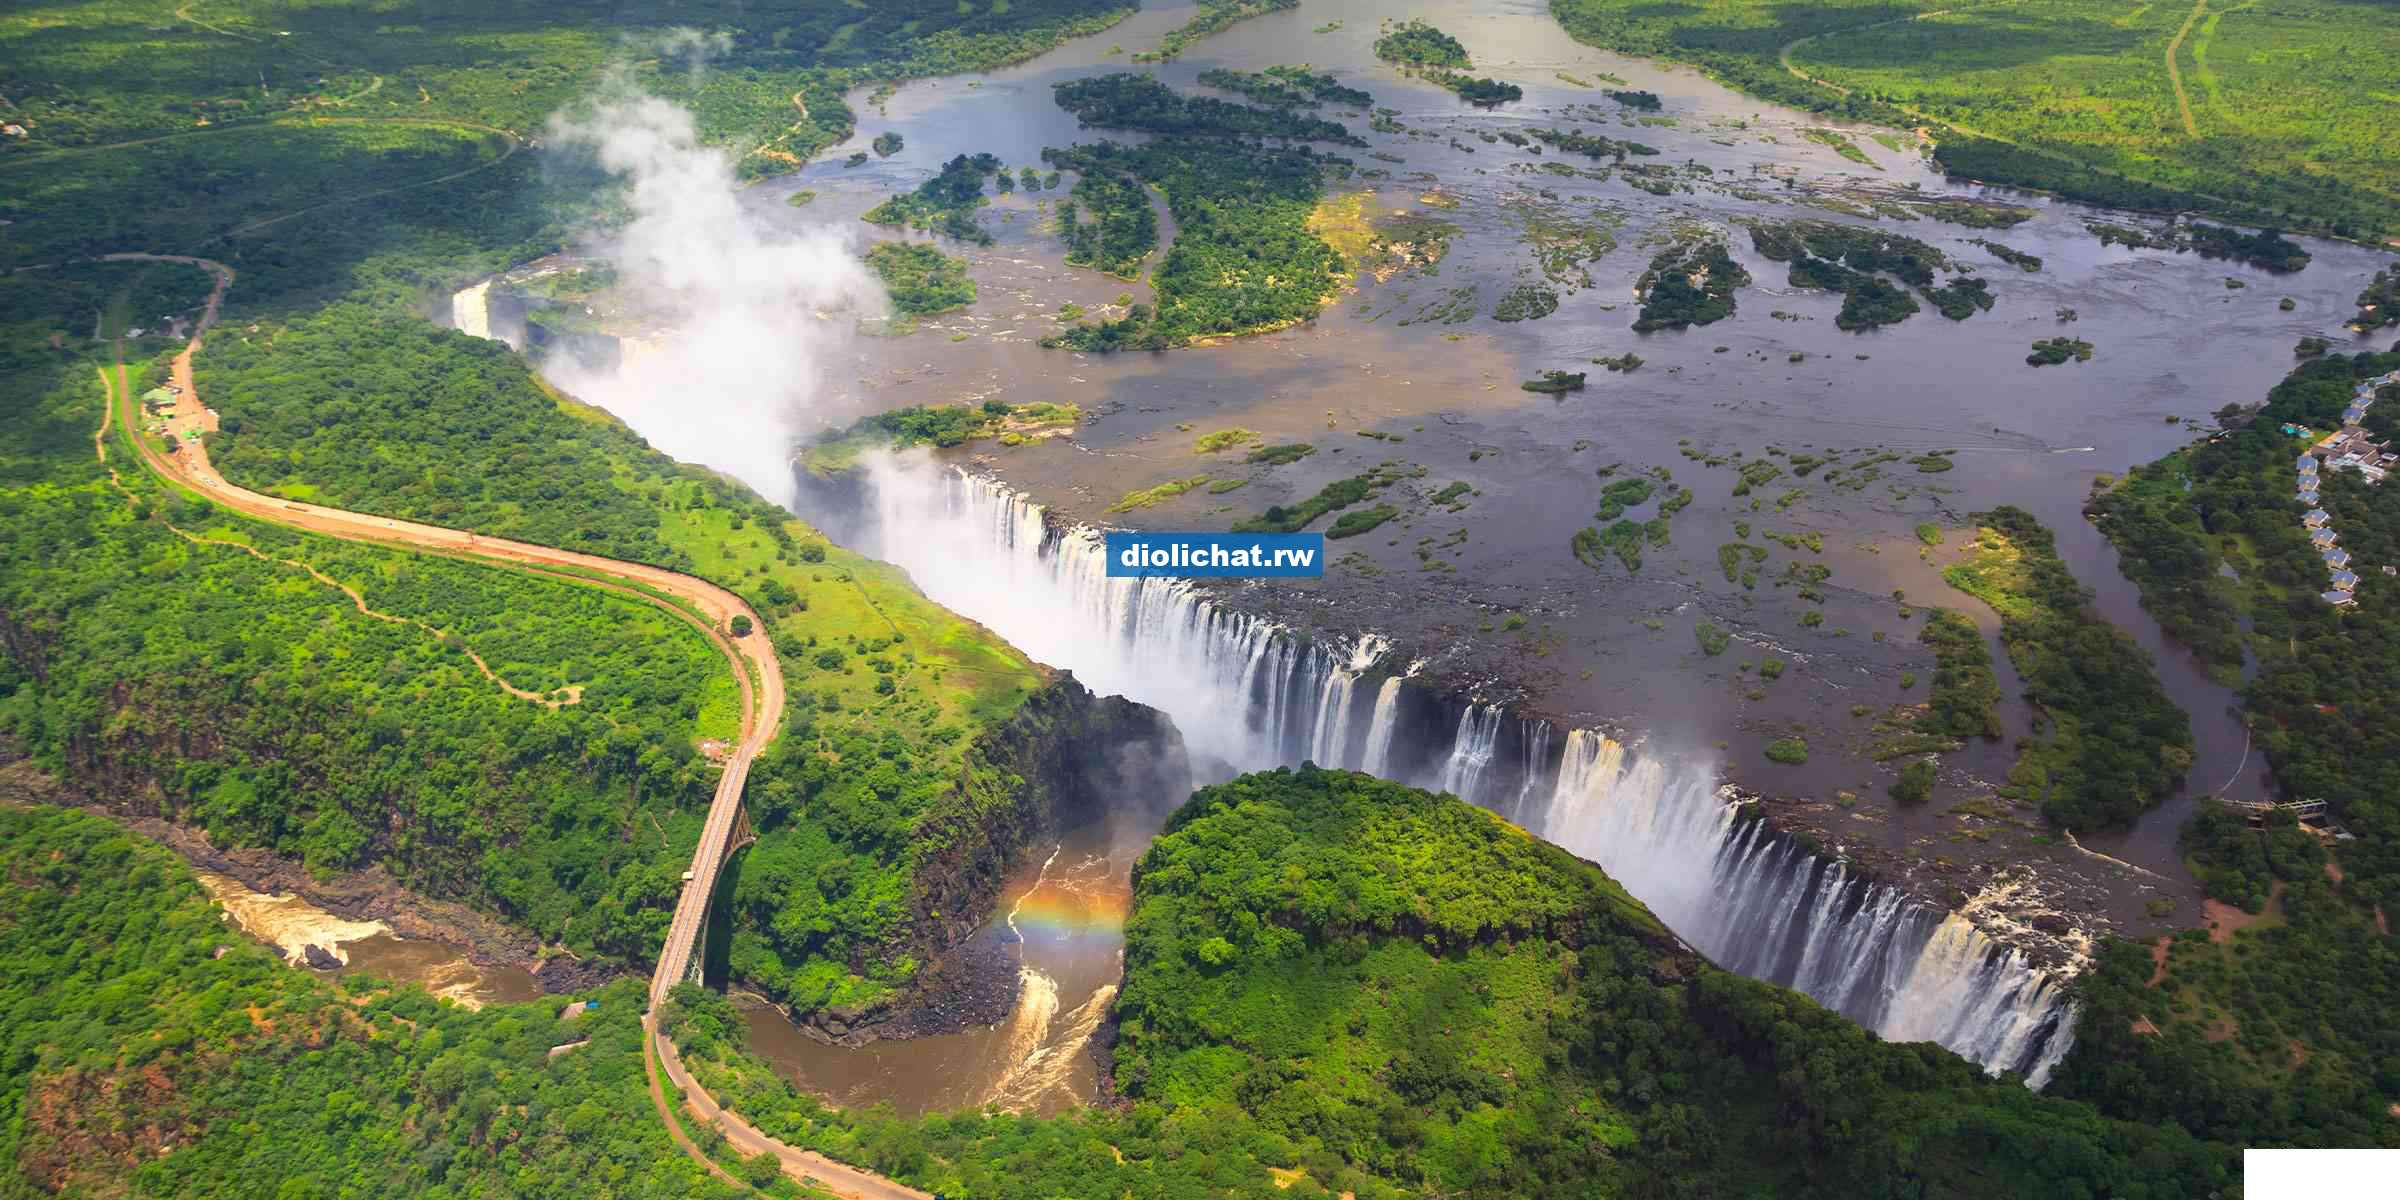 2. Victoria Falls, Zambia/Zimbabwe